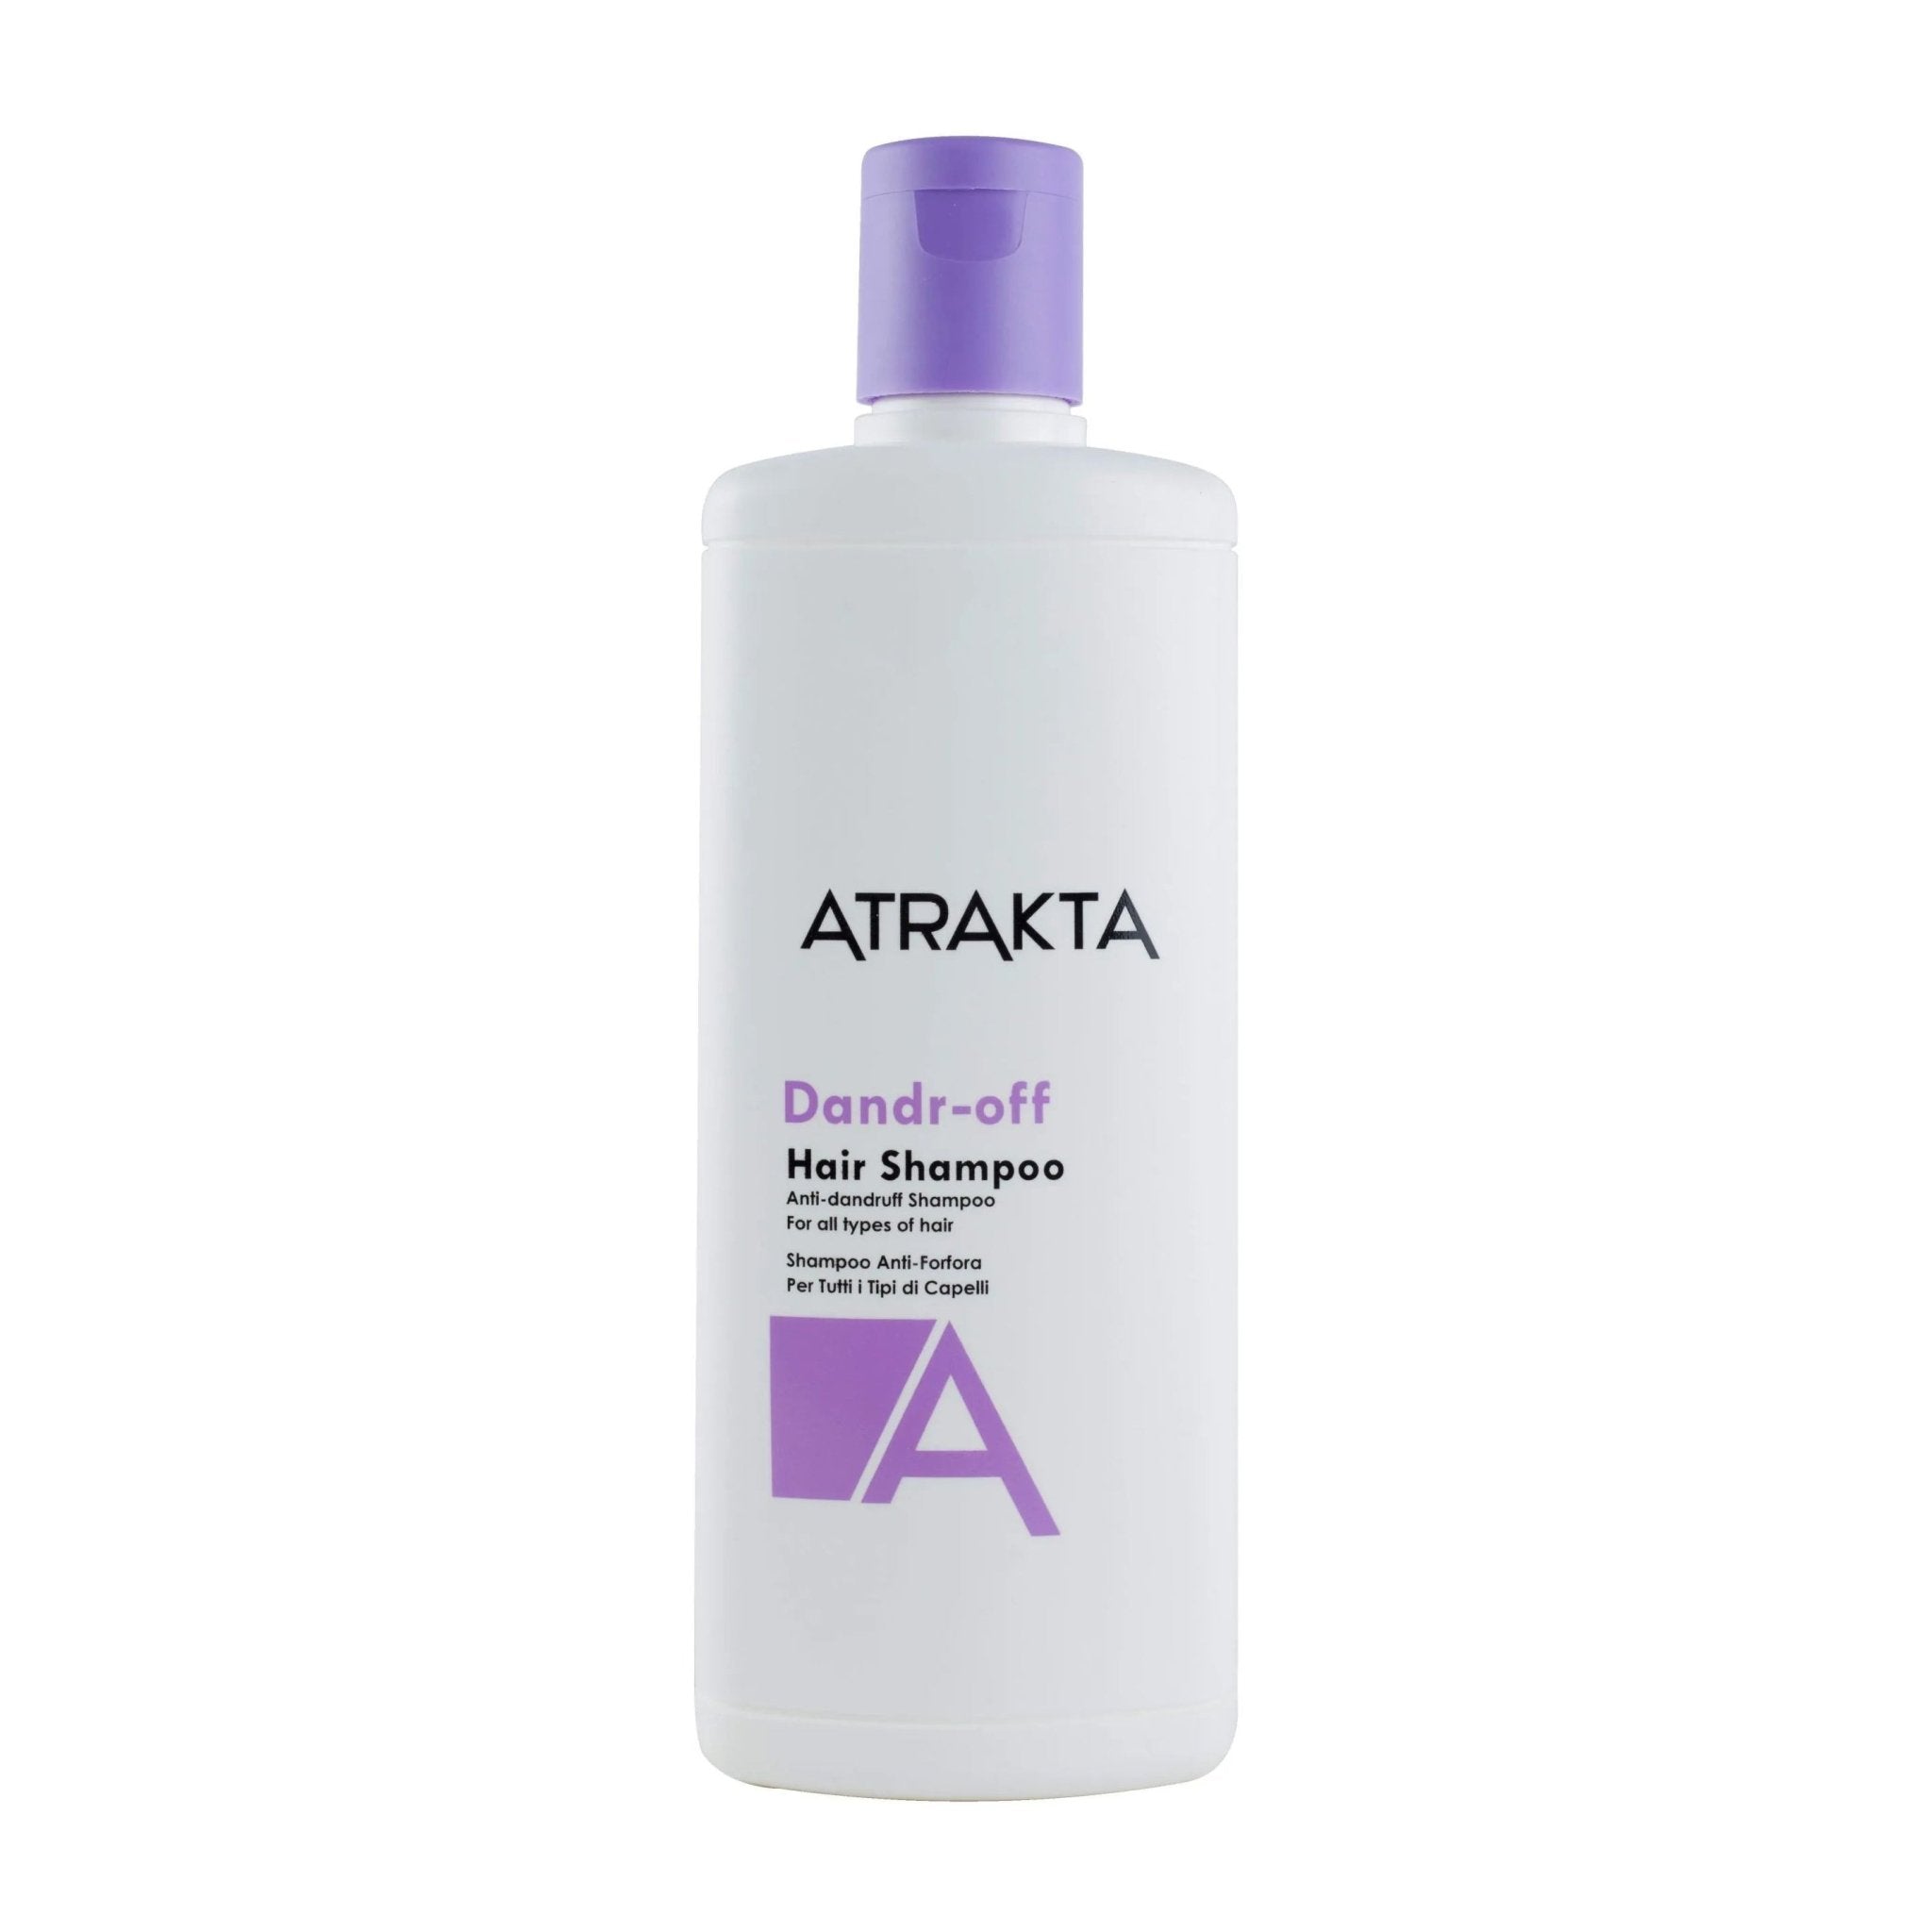 Atrakta Dandr-off Hair Shampoo - 250ml - Bloom Pharmacy